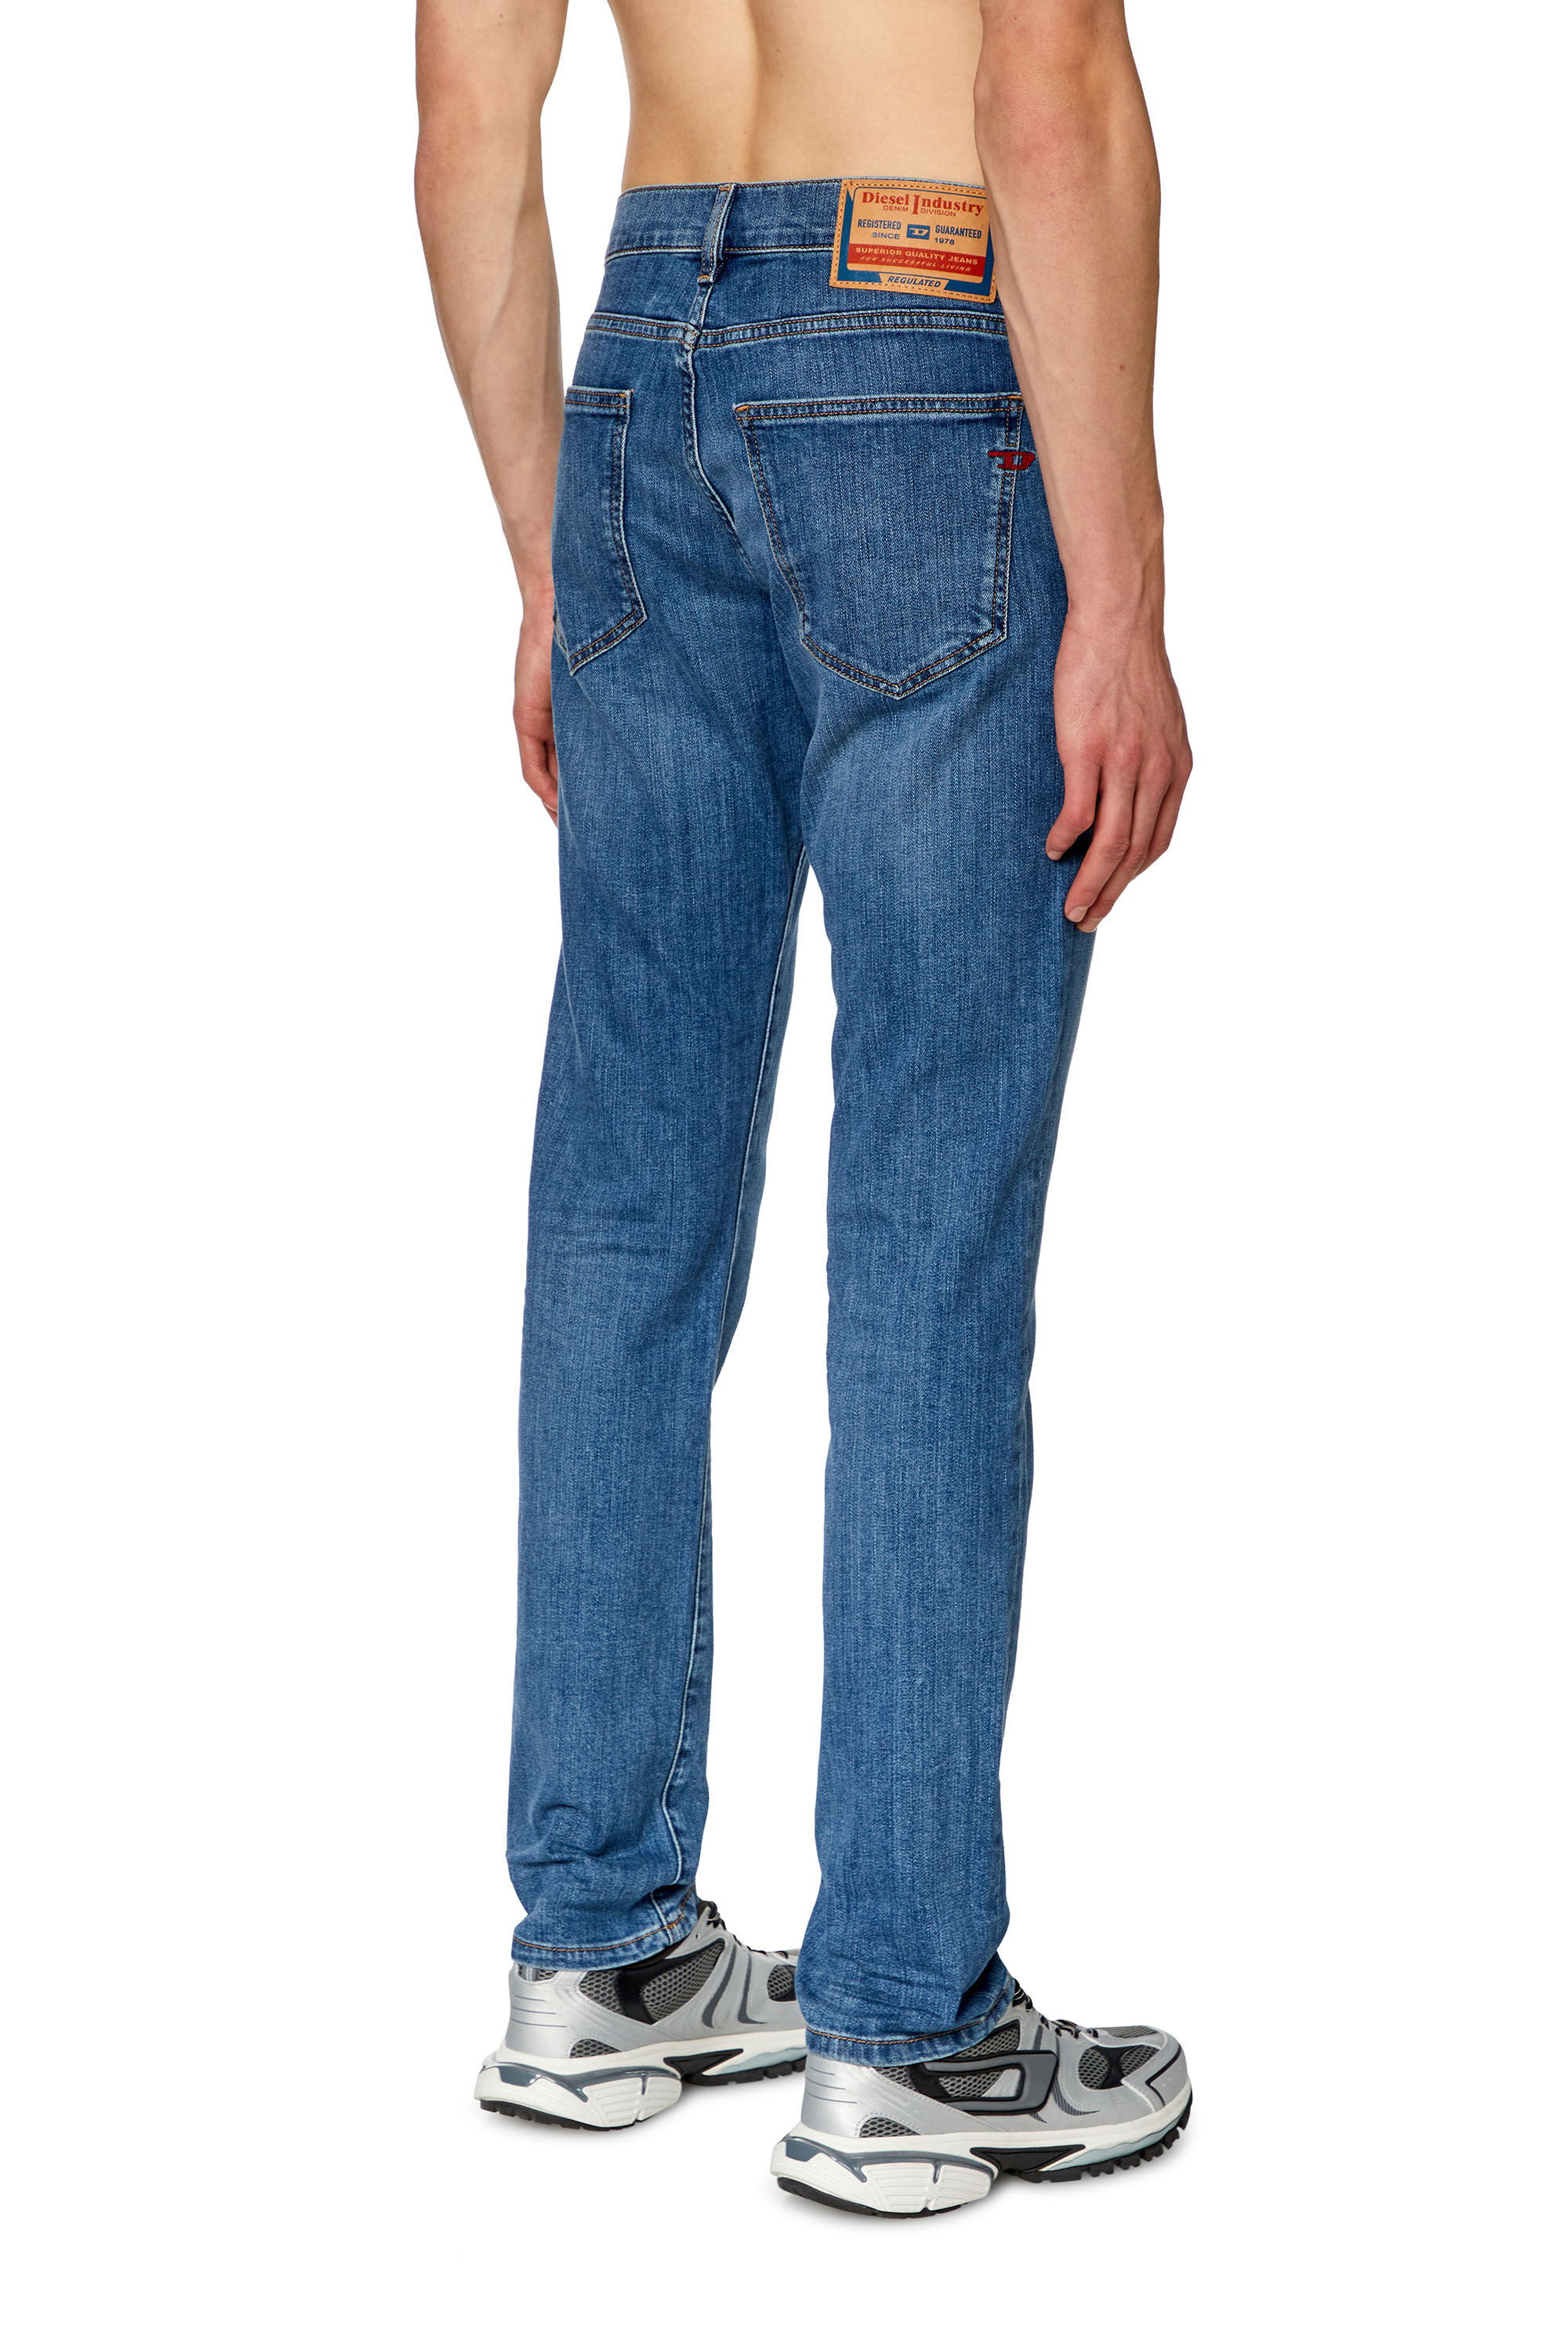 Diesel - Slim Jeans 2019 D-Strukt 0KIAL, Hombre Slim Jeans - 2019 D-Strukt in Azul marino - Image 3